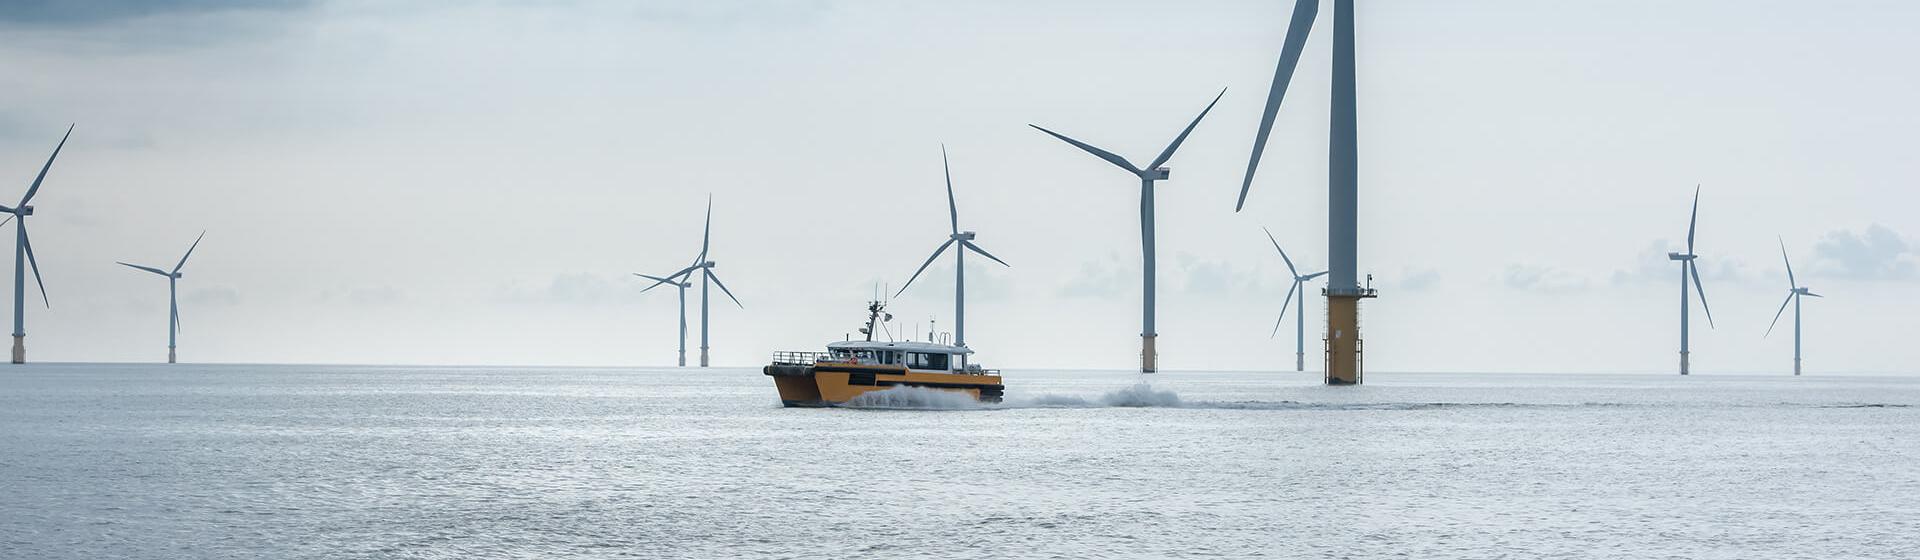 ein Offshore-Windpark. Ein Serviceboot fährt in schnellem Tempo zwischen den Turbinen hindurch und erzeugt dabei Kielwasser.